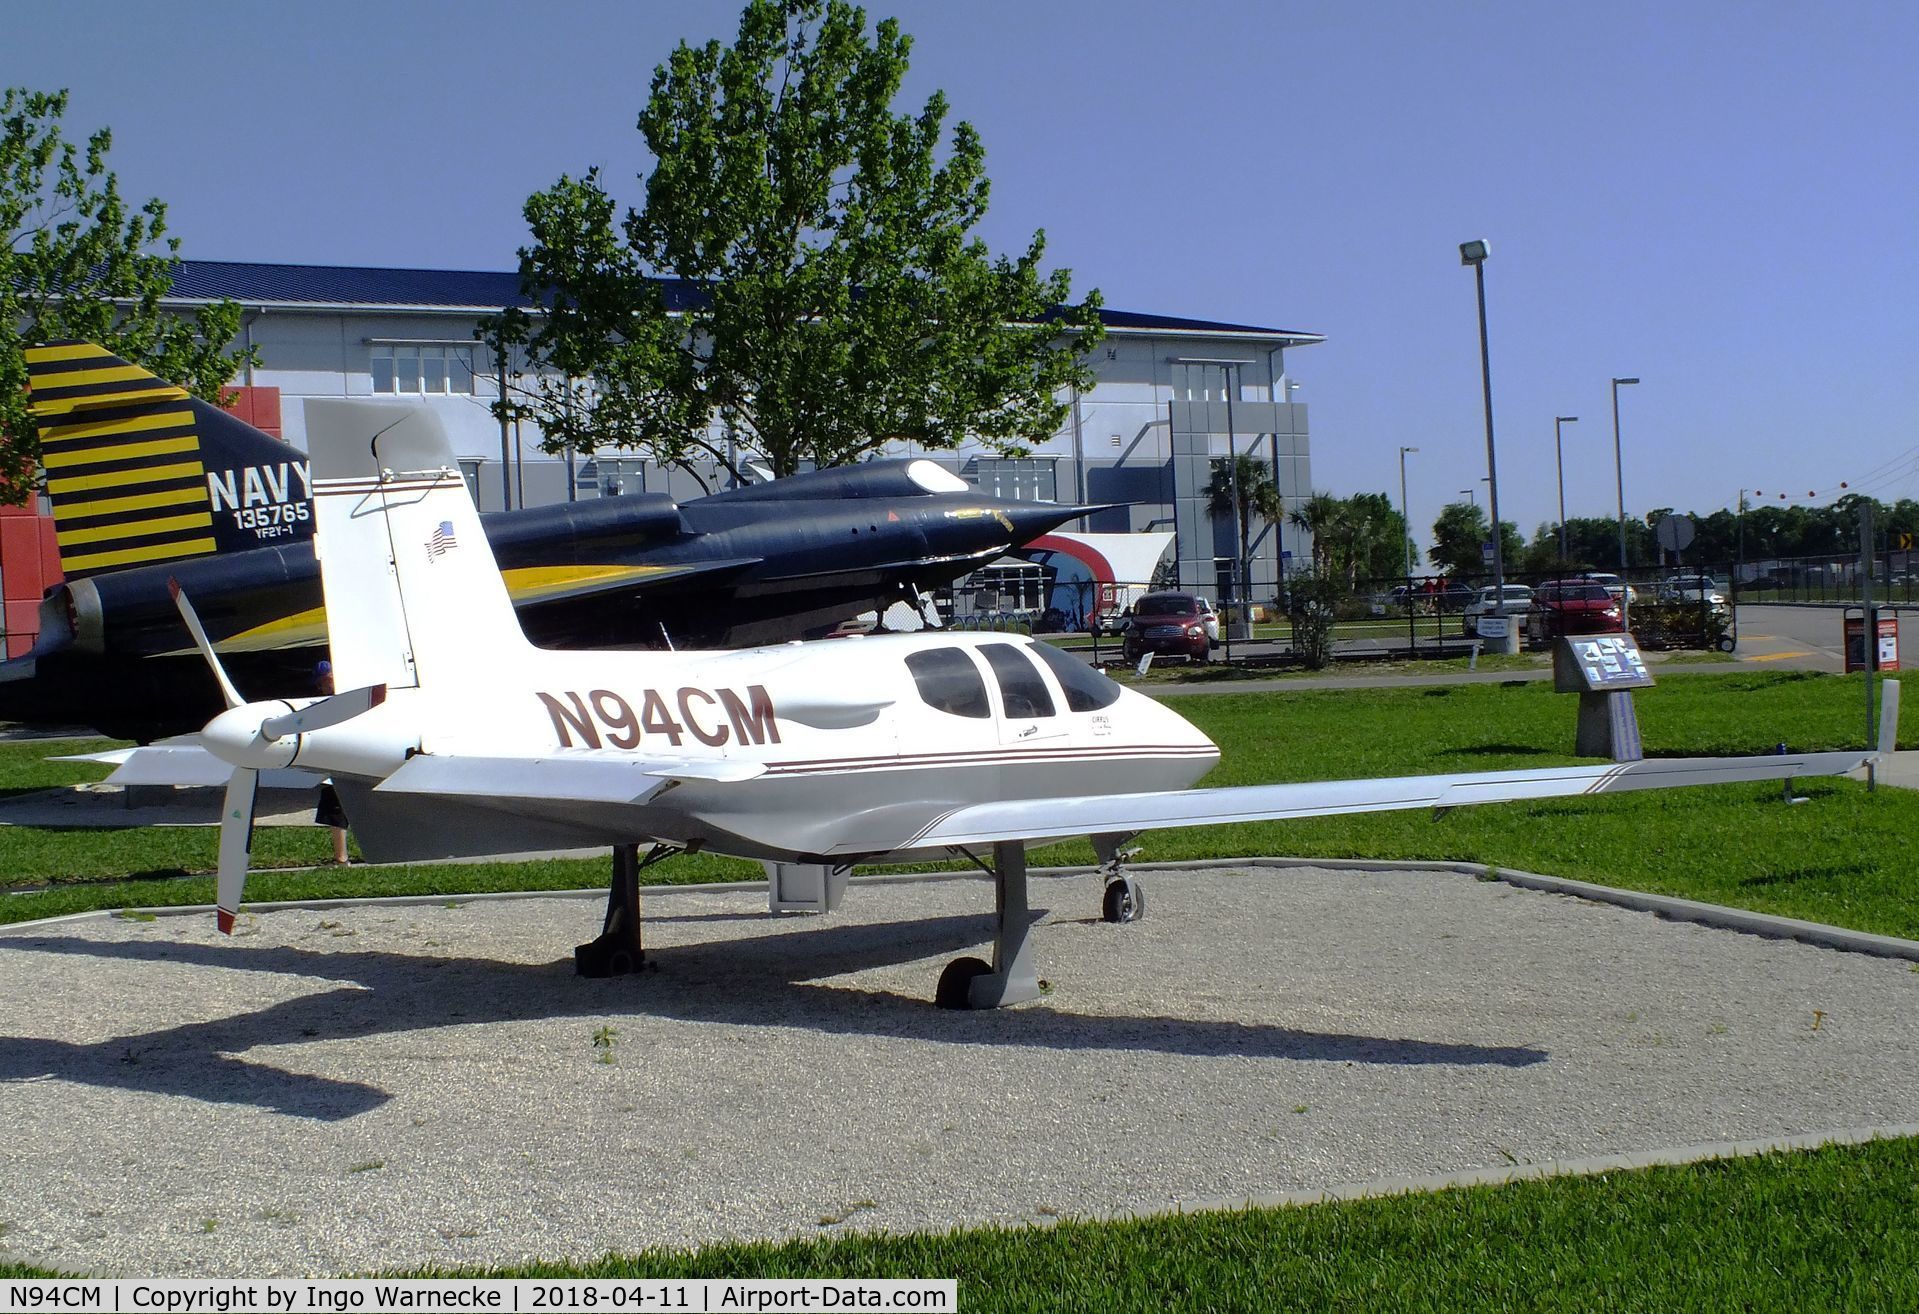 N94CM, 1993 Cirrus VK-30 C/N 9105, Cirrus VK-30 outside the Florida Air Museum (ex ISAM) during 2018 Sun 'n Fun, Lakeland FL